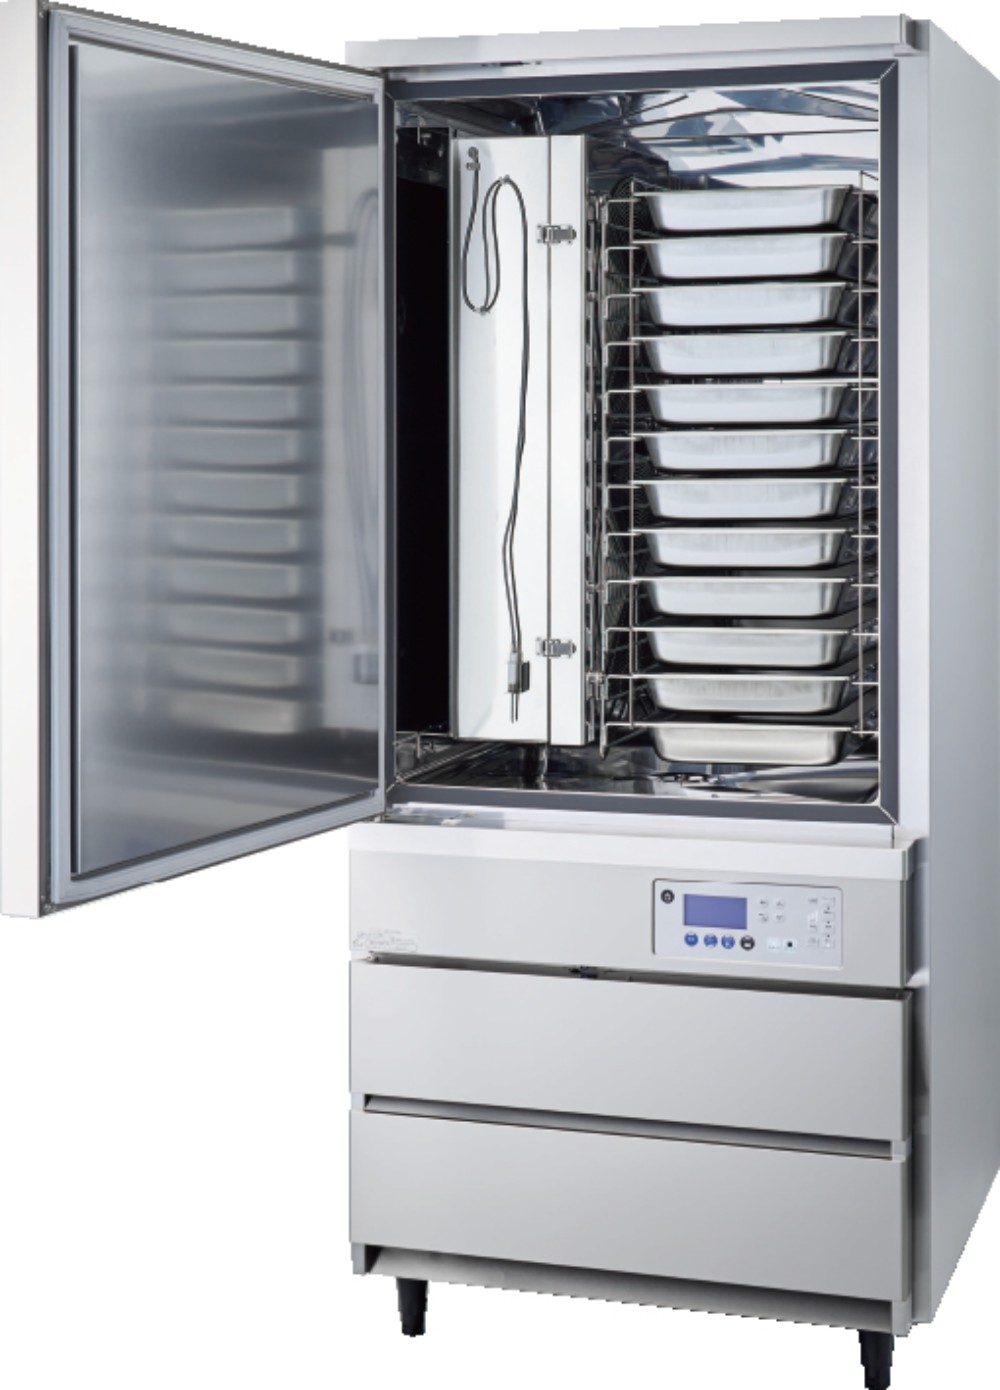 ブラストチラー | 業務用冷蔵庫・厨房機器用品の通販「厨房プロマート」